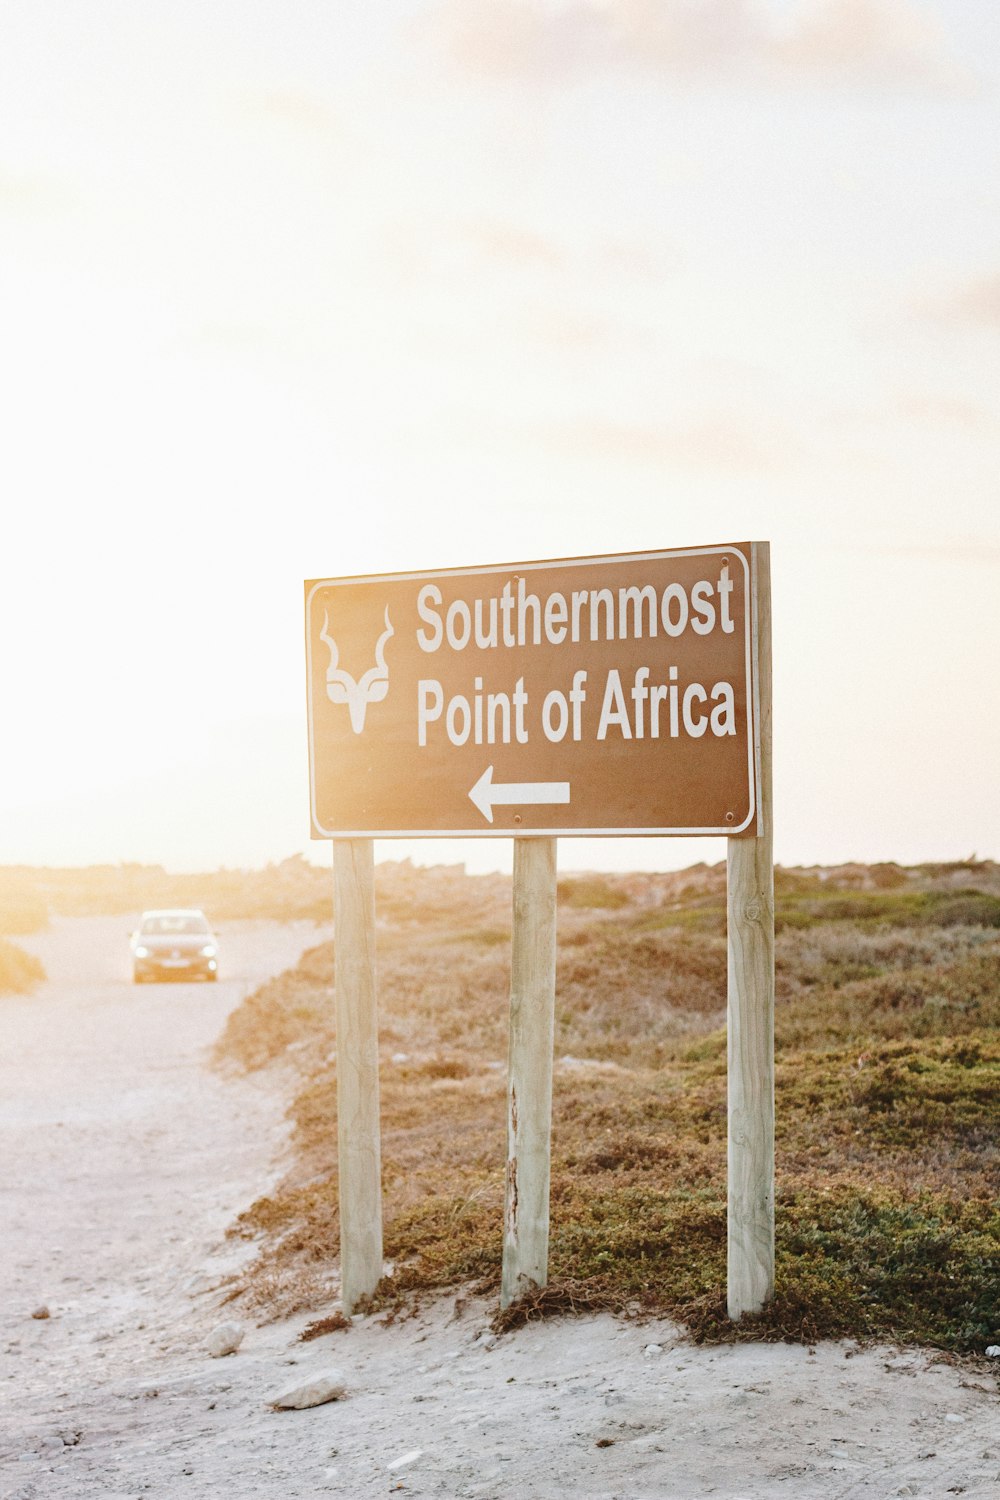 Señal de tráfico en el punto más meridional de África y vehículo blanco en la carretera durante el día